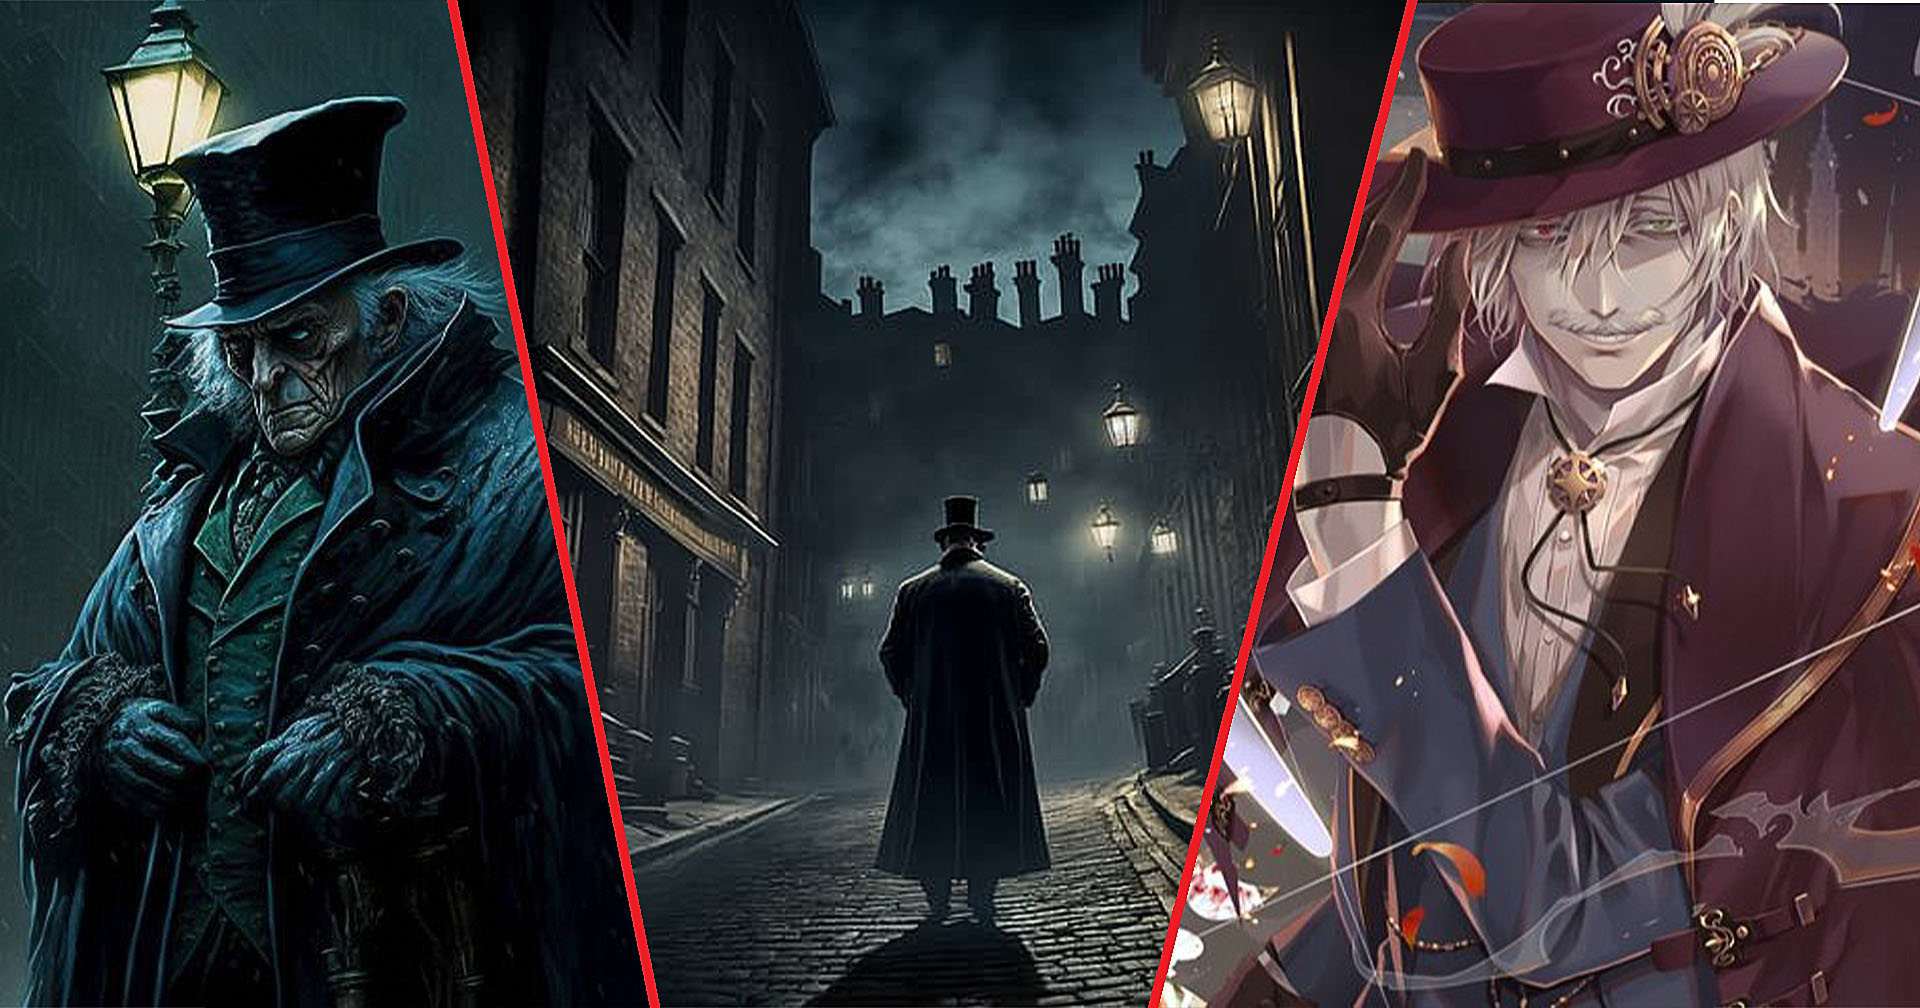 เล่าขานตำนาน Jack The Ripper ฆาตกรต่อเนื่องชื่อกระฉ่อนโลกที่กลายเป็นคดีปริศนากว่า 130 ปี